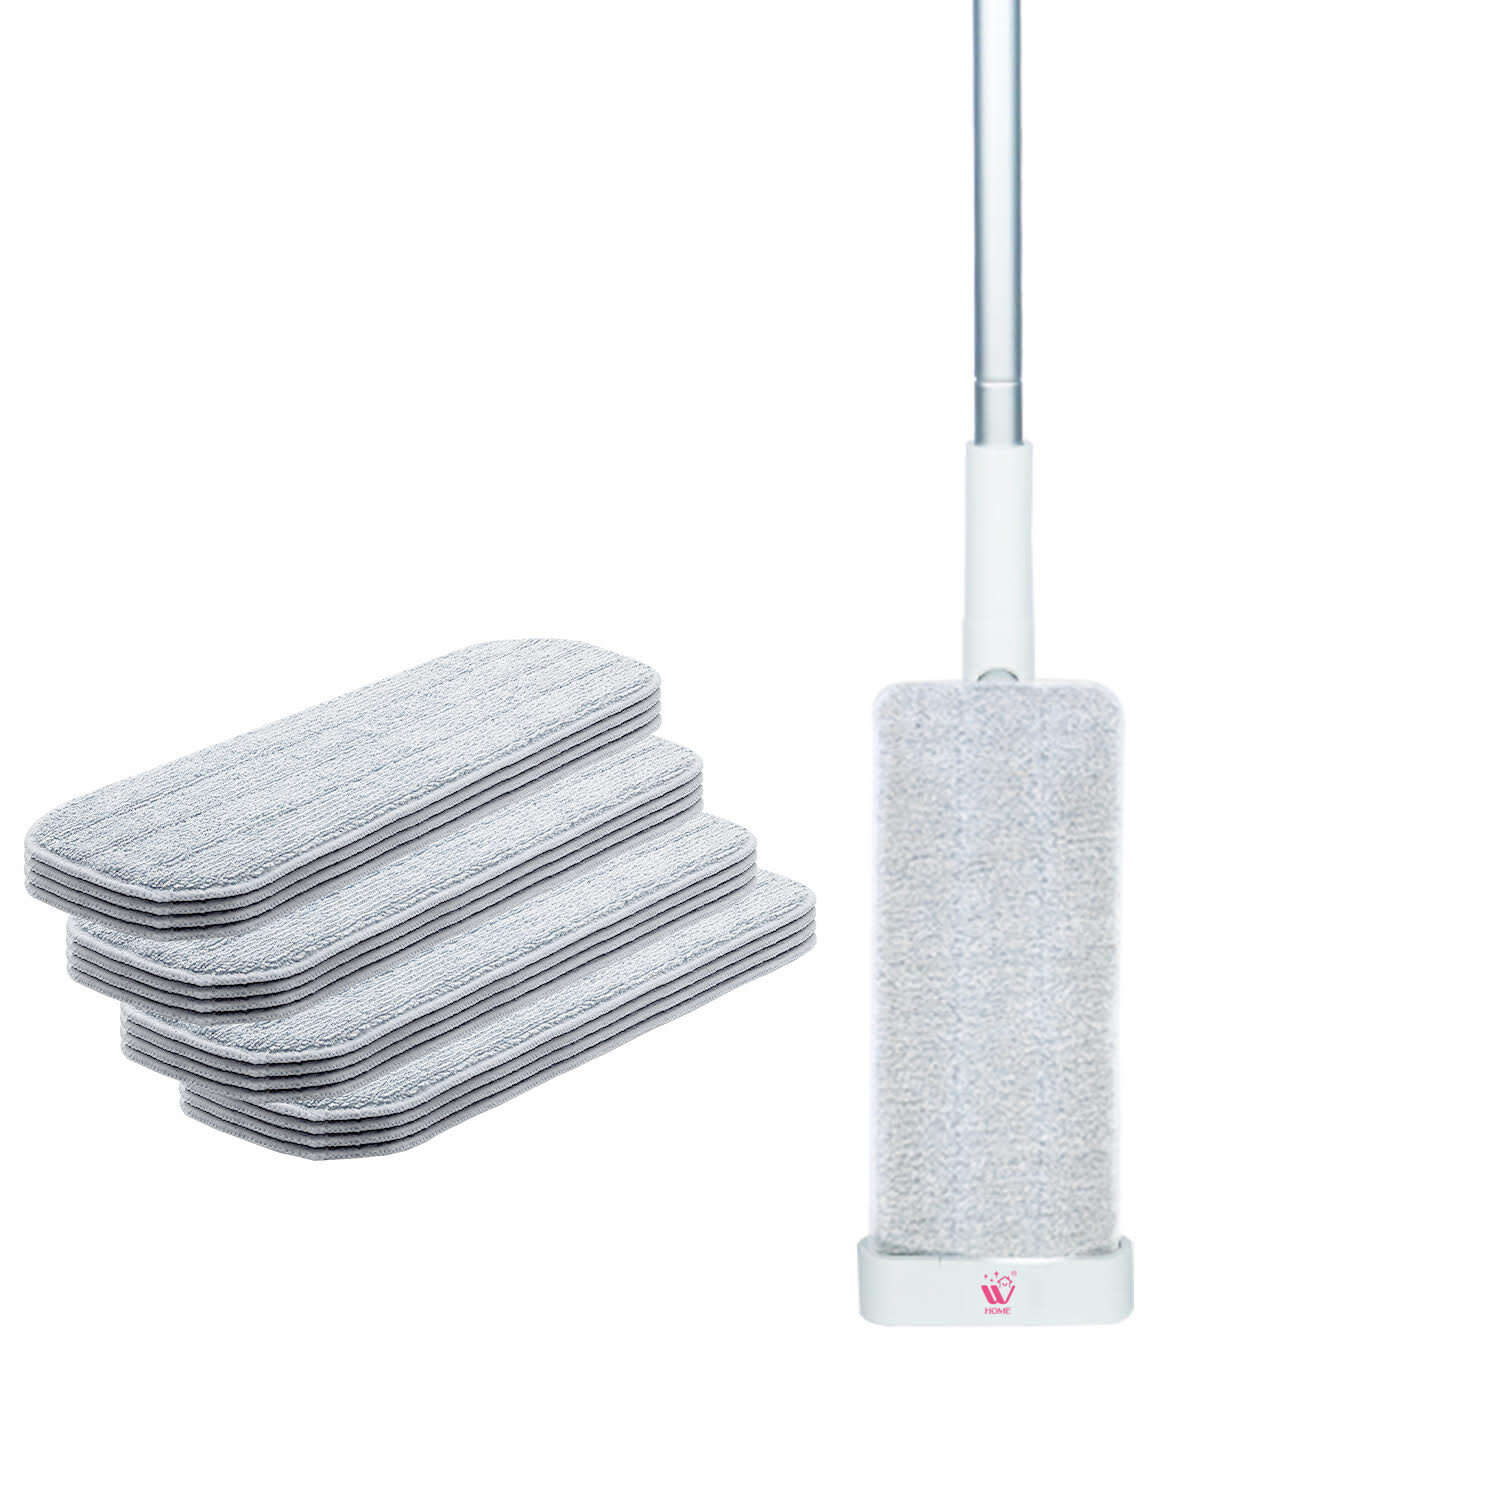 https://assets.wfcdn.com/im/91587334/compr-r85/1861/186172744/w-home-hand-wash-free-flat-mop-refill-microfiber-mop-reusable-pads-gray.jpg